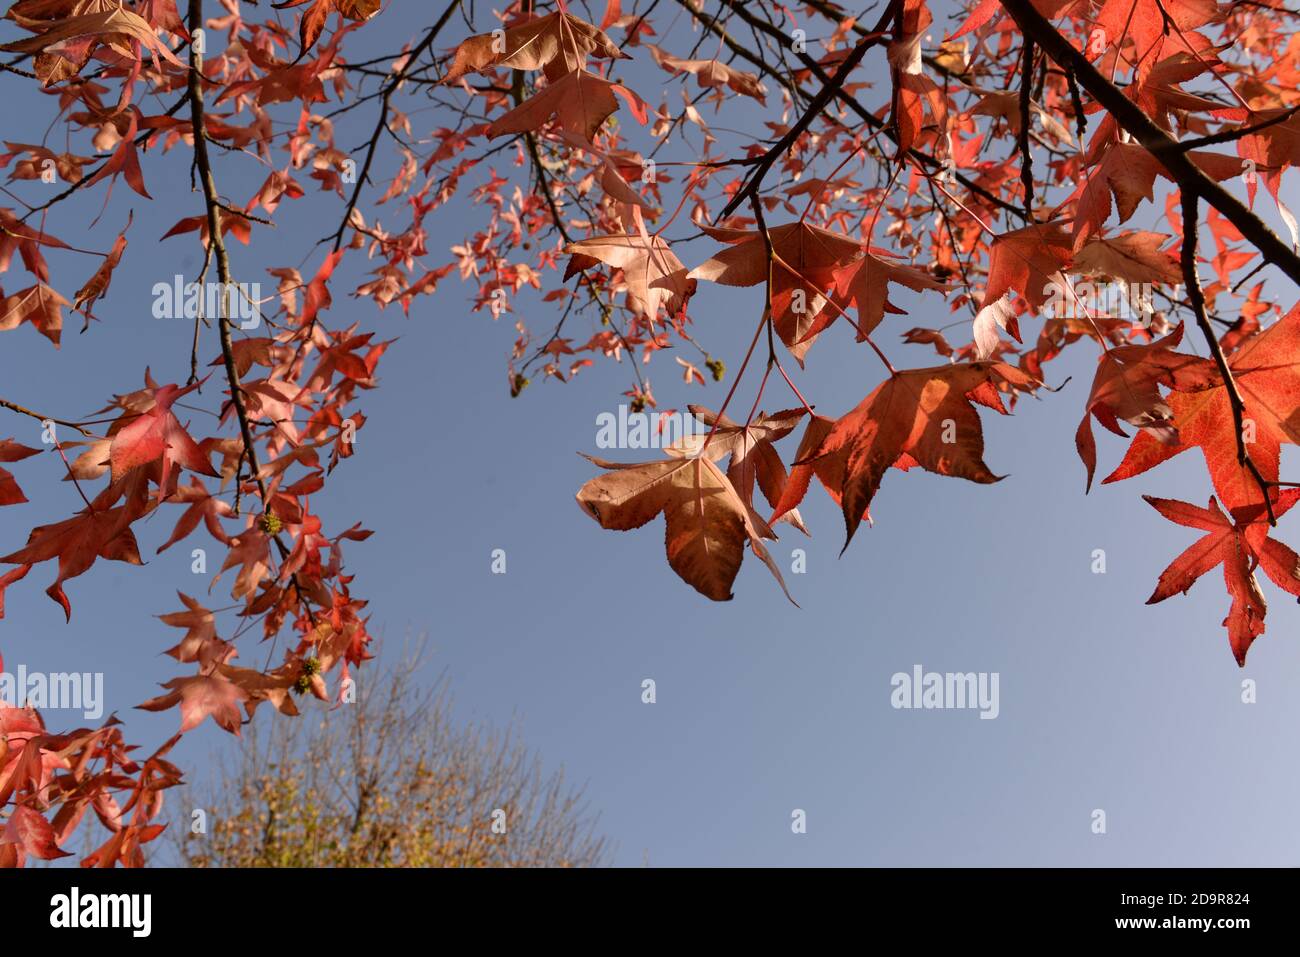 Ein schöner Herbsttag mit Sonnenschein, einem blauen Himmel und diesem wunderschönen Zweig aus roten Blättern Stockfoto